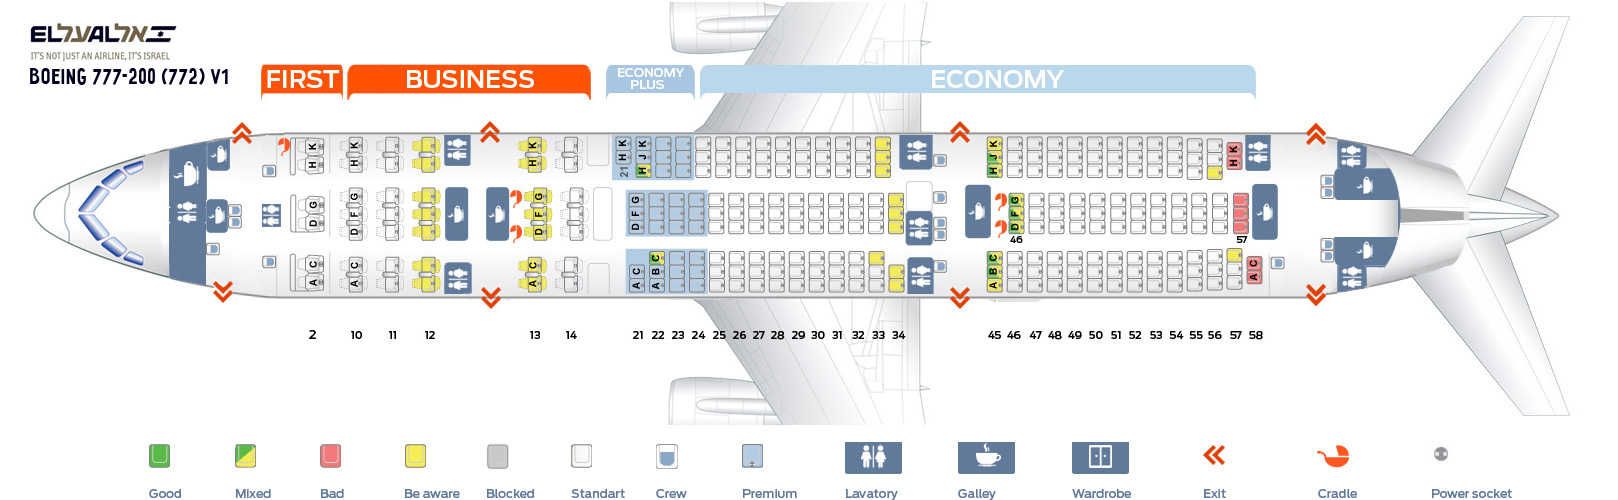 772 Aircraft Seating Chart